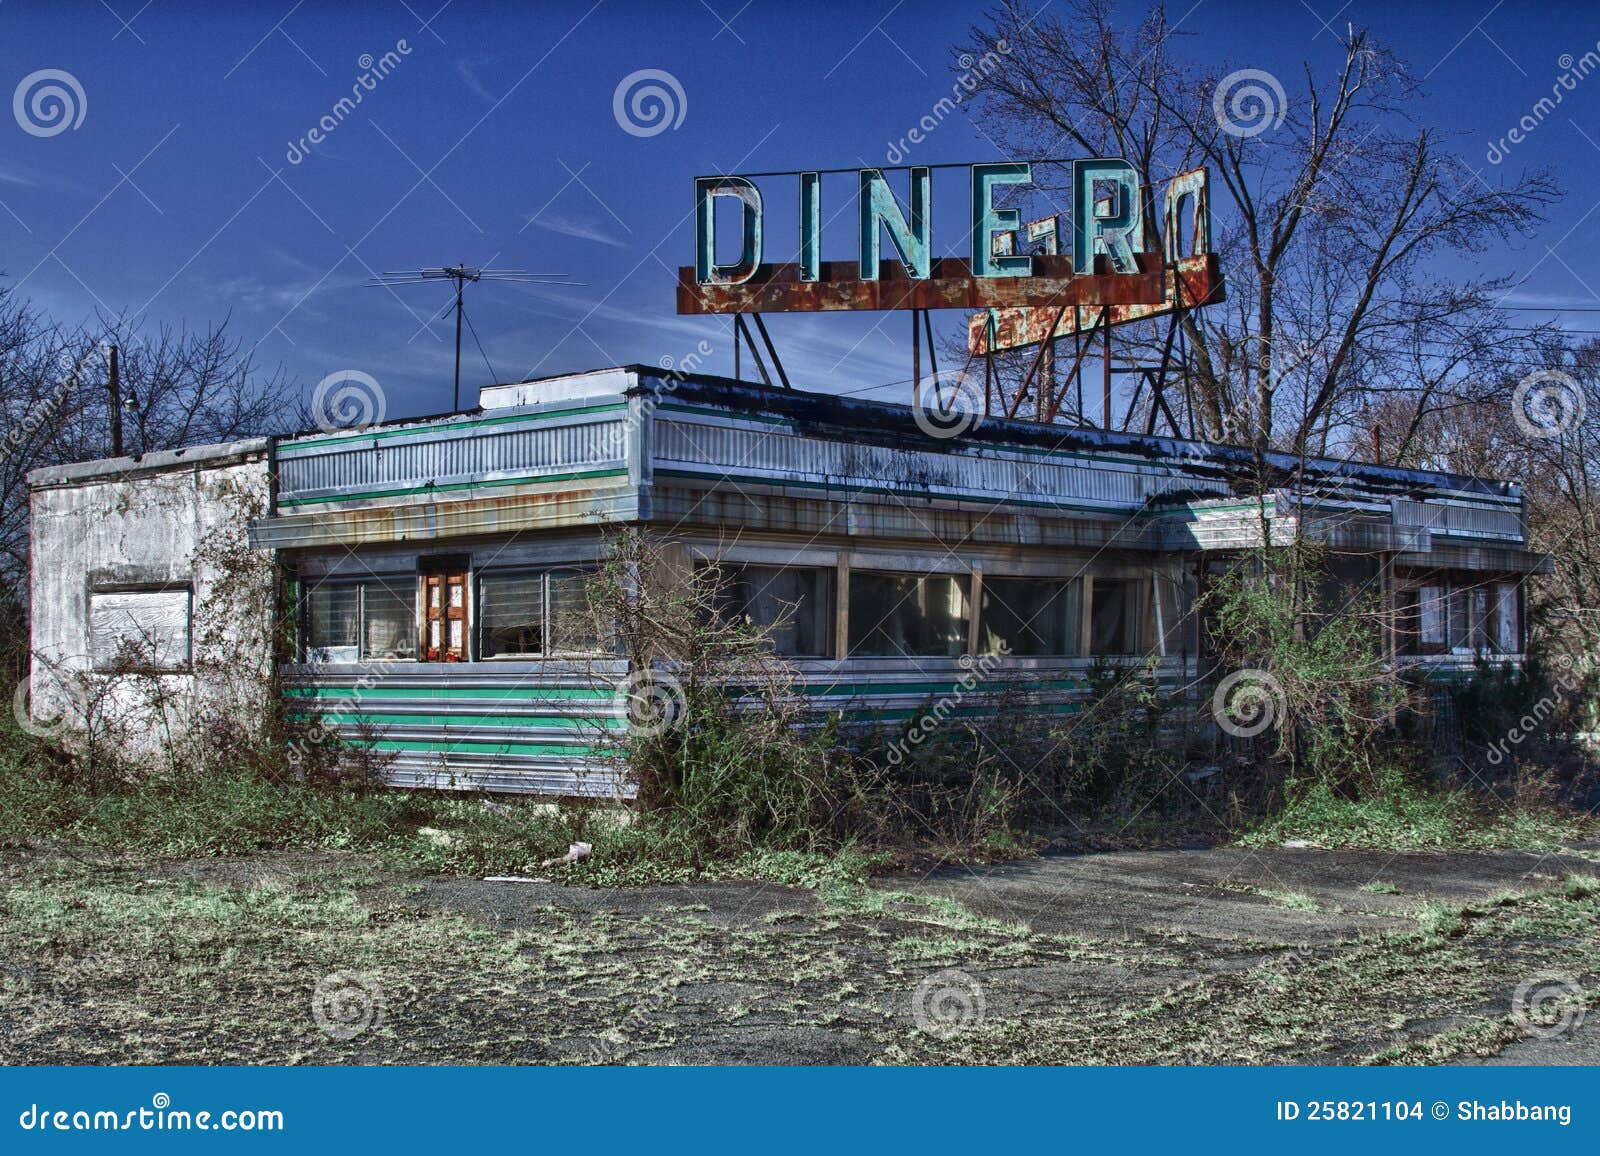 abandoned diner